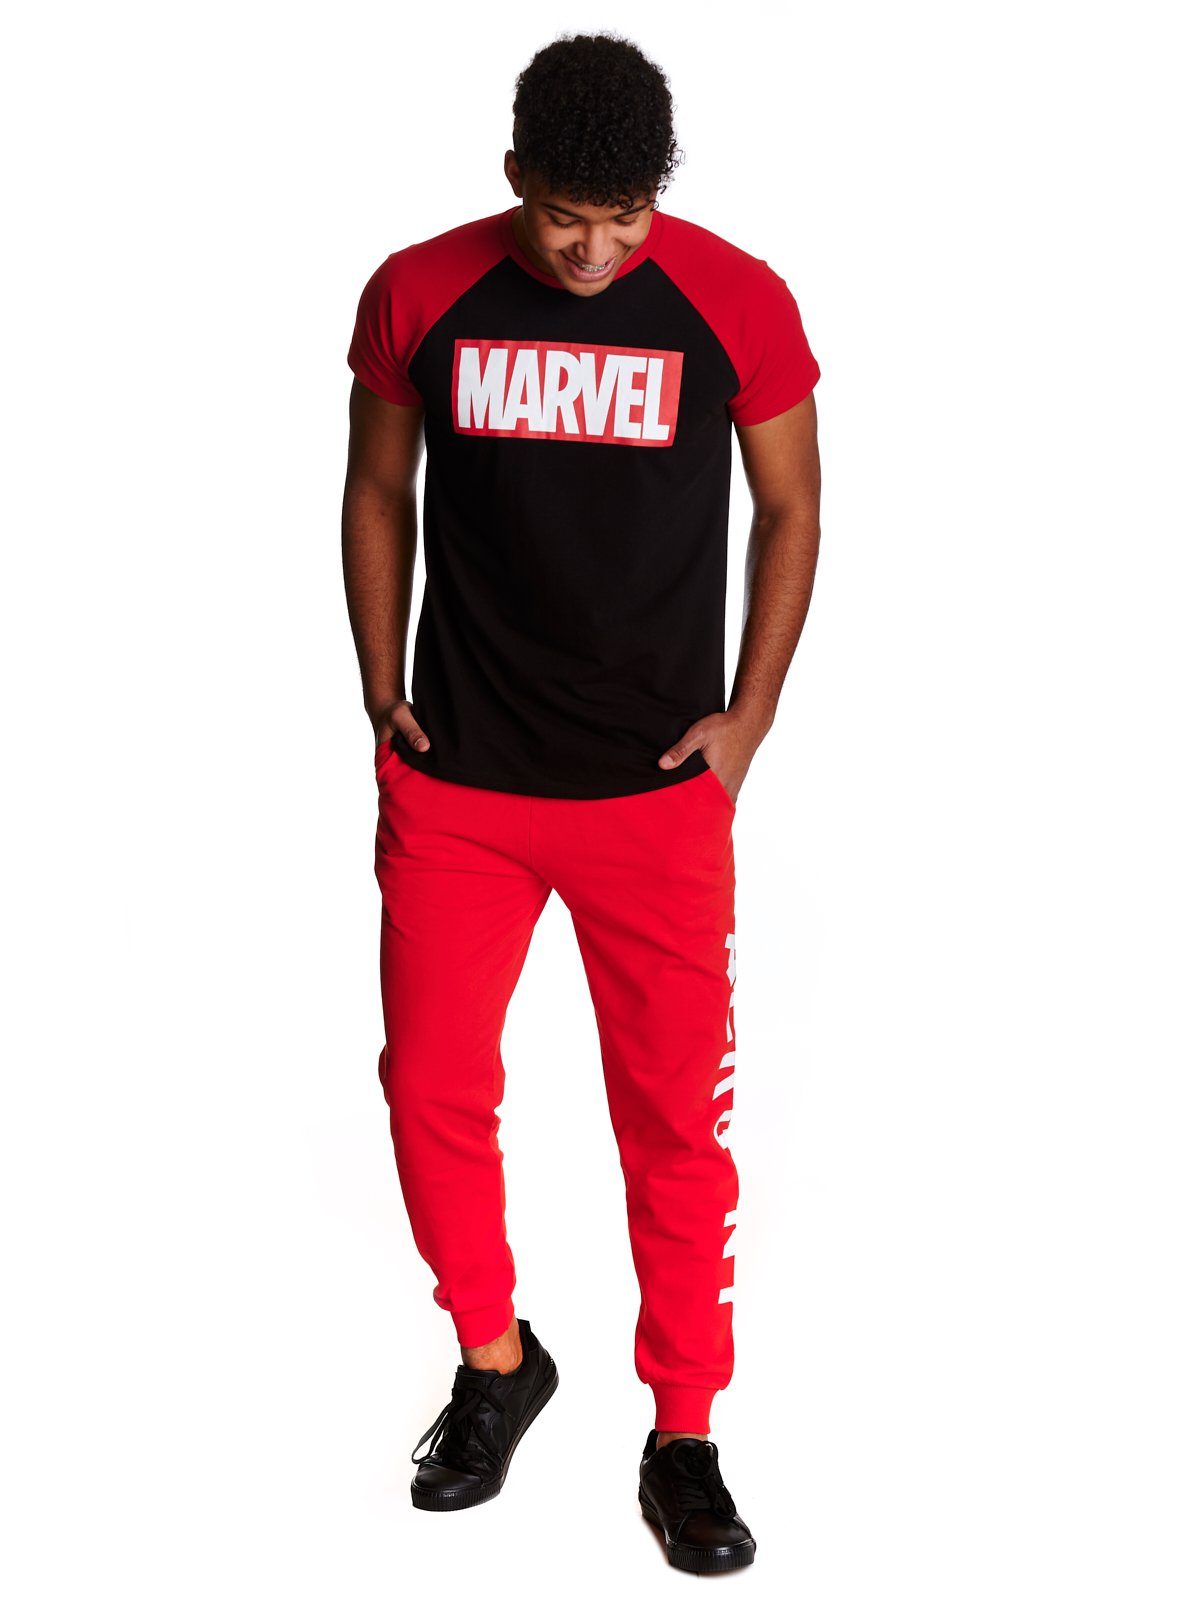 Herren Shirts MARVEL T-Shirt Marvel Marvel Logos